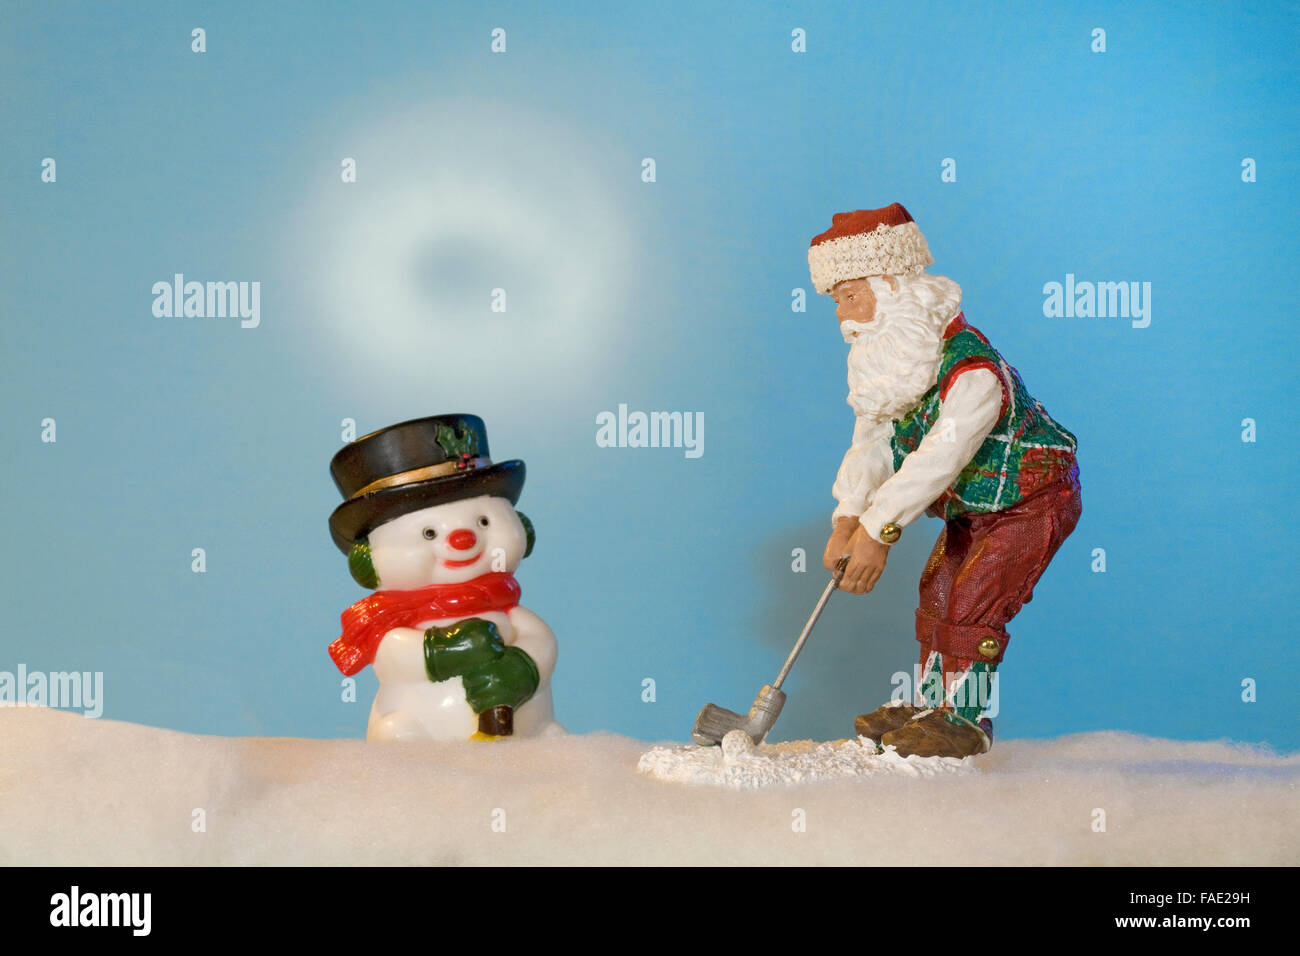 Père noël et bonhomme de son ami jouer au golf dans la calotte glaciaire au Pôle Nord, juste avant Noël. Banque D'Images